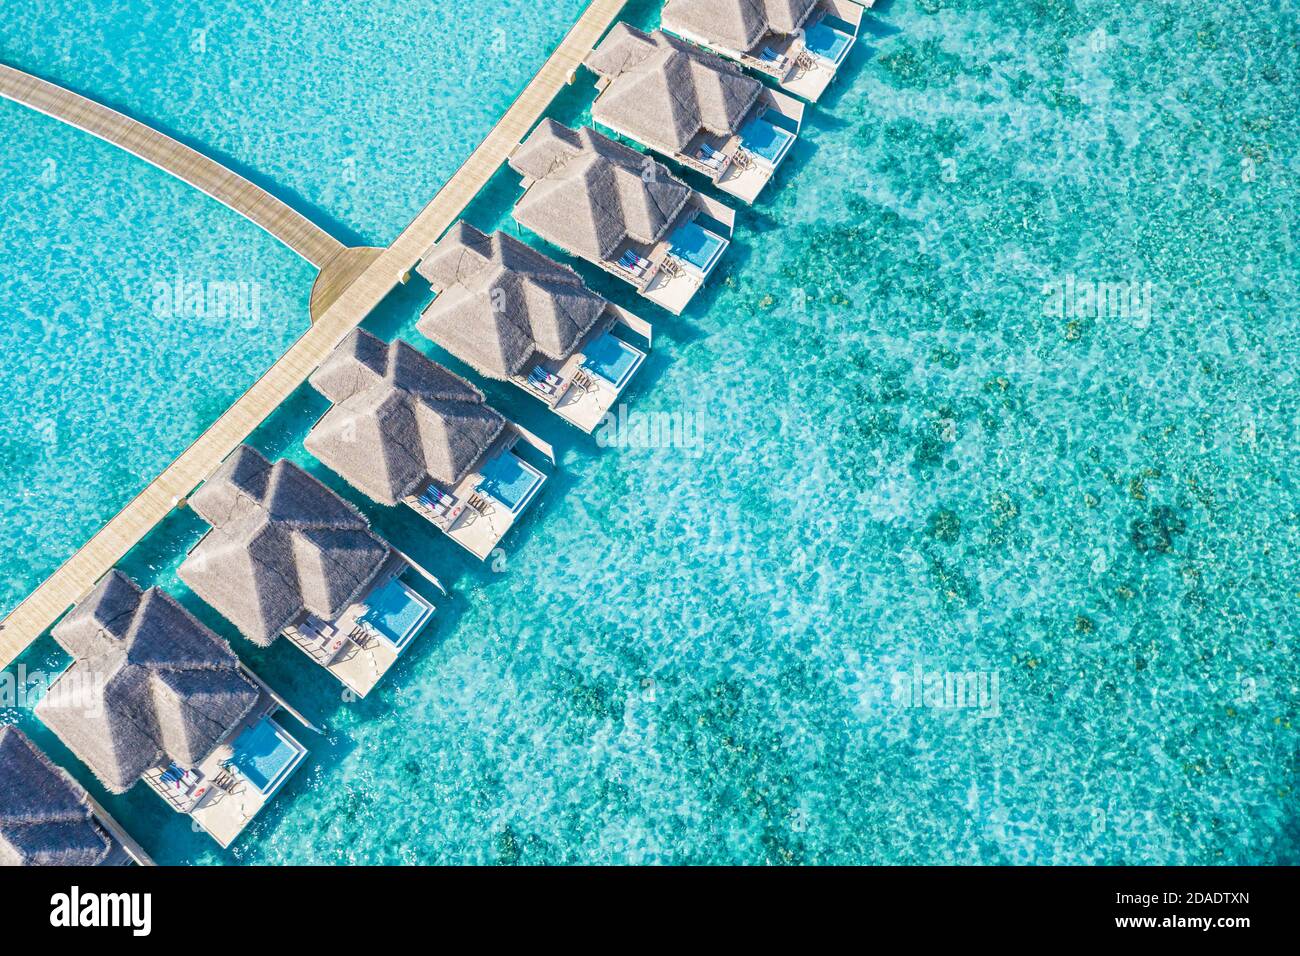 Atolle und Inseln auf den Malediven. Tropische Insel auf den Malediven mit luxuriösen Wasservillen, Bungalows über dem herrlichen blauen Meer. Sommerurlaub, Luftaufnahme Stockfoto